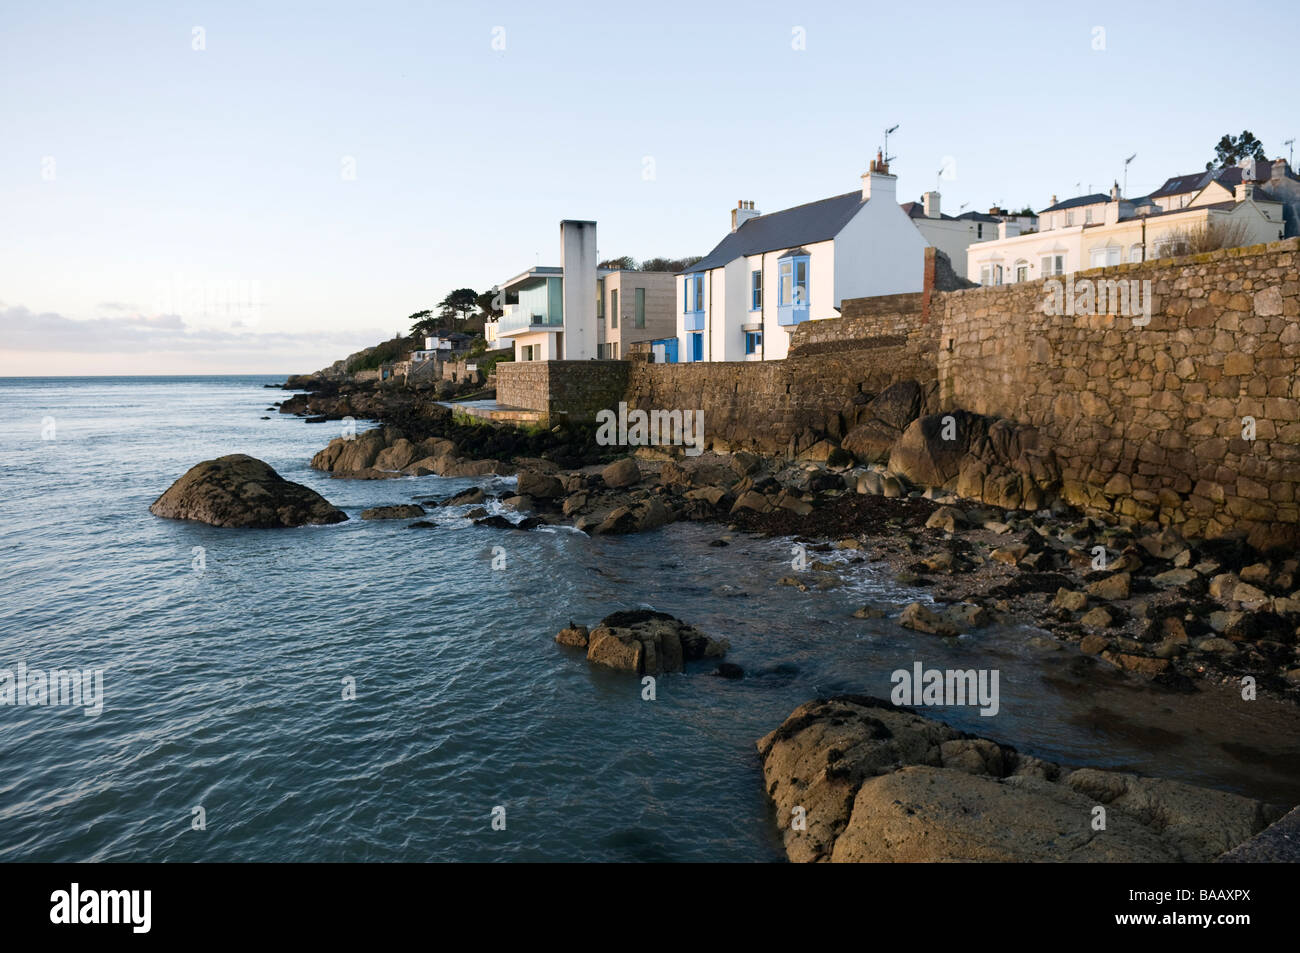 Houses along the coast at Killiney, Dublin Stock Photo